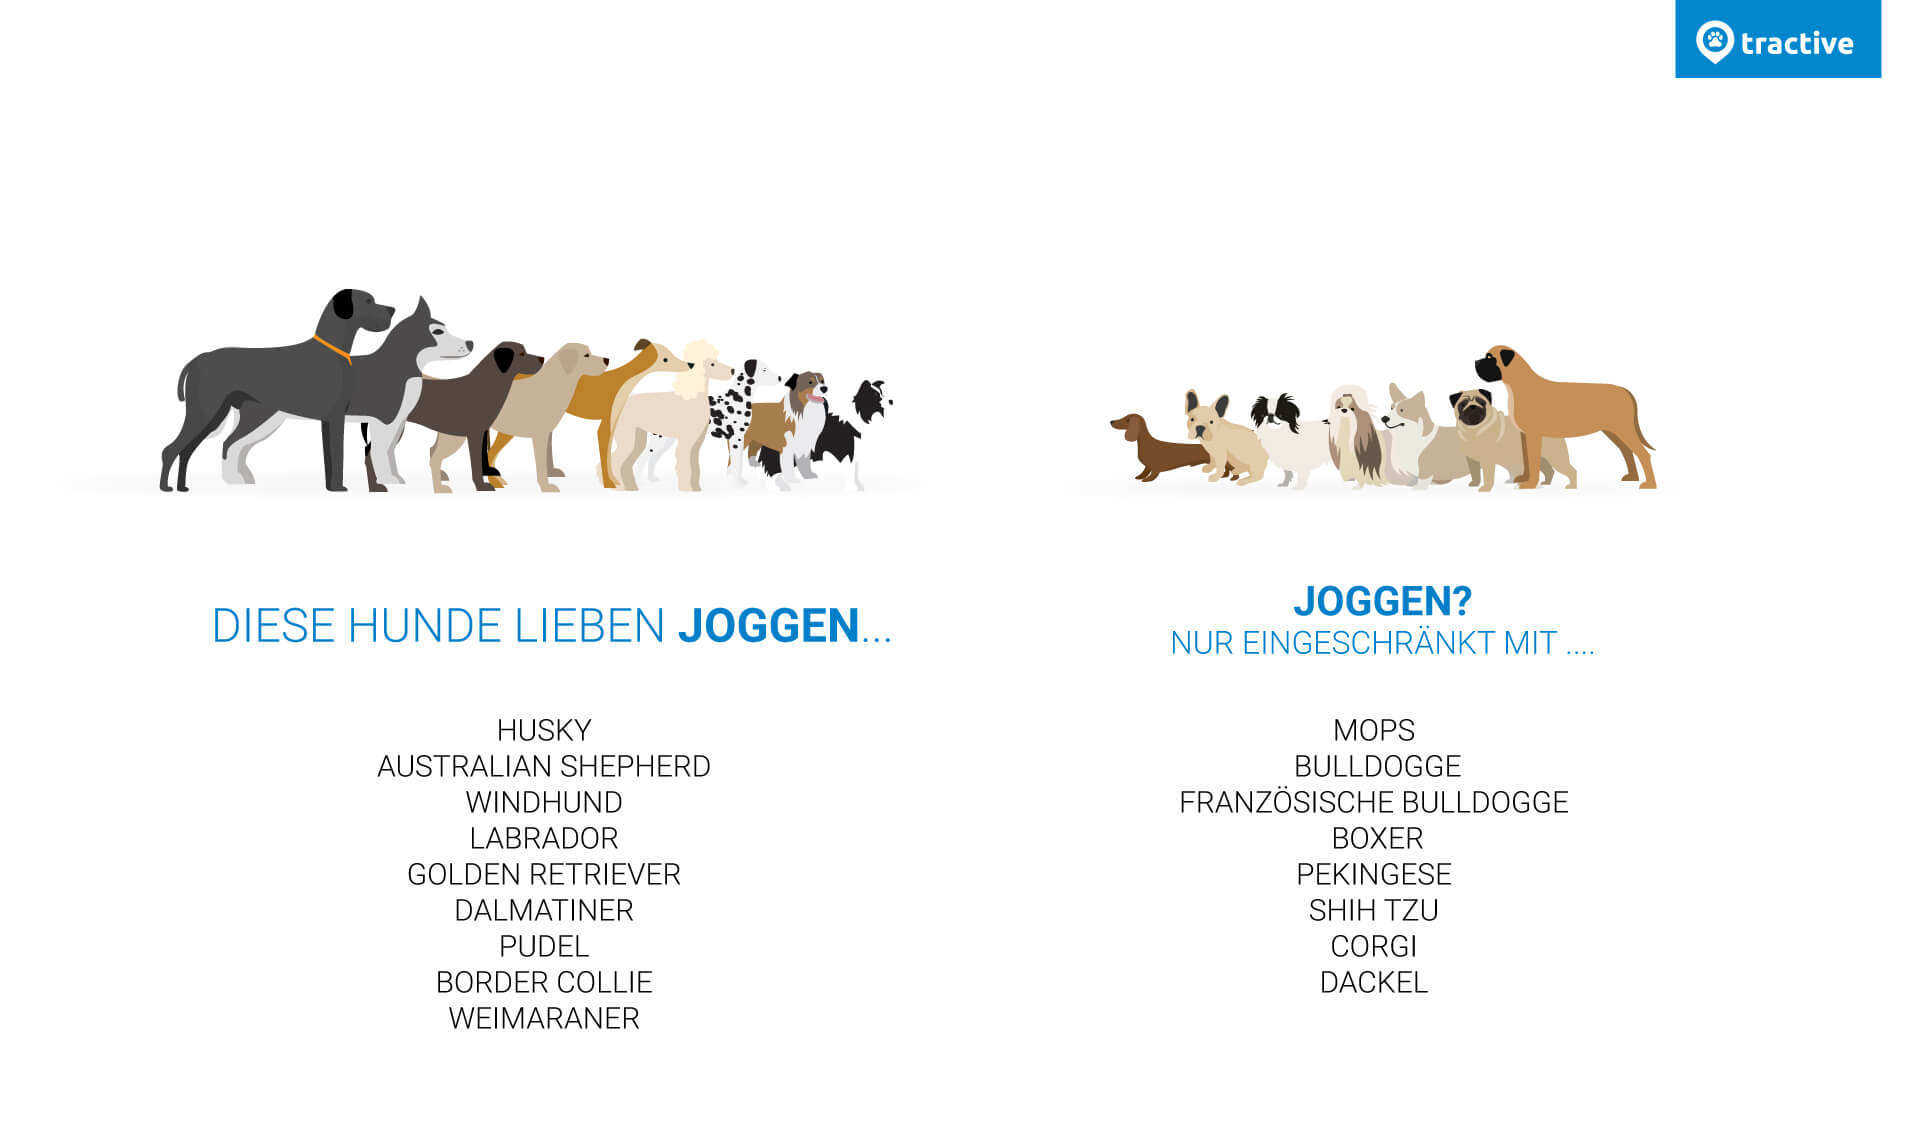 Übersicht, welche Hunde gerne joggen und welche nicht mit Hunde-Illustration